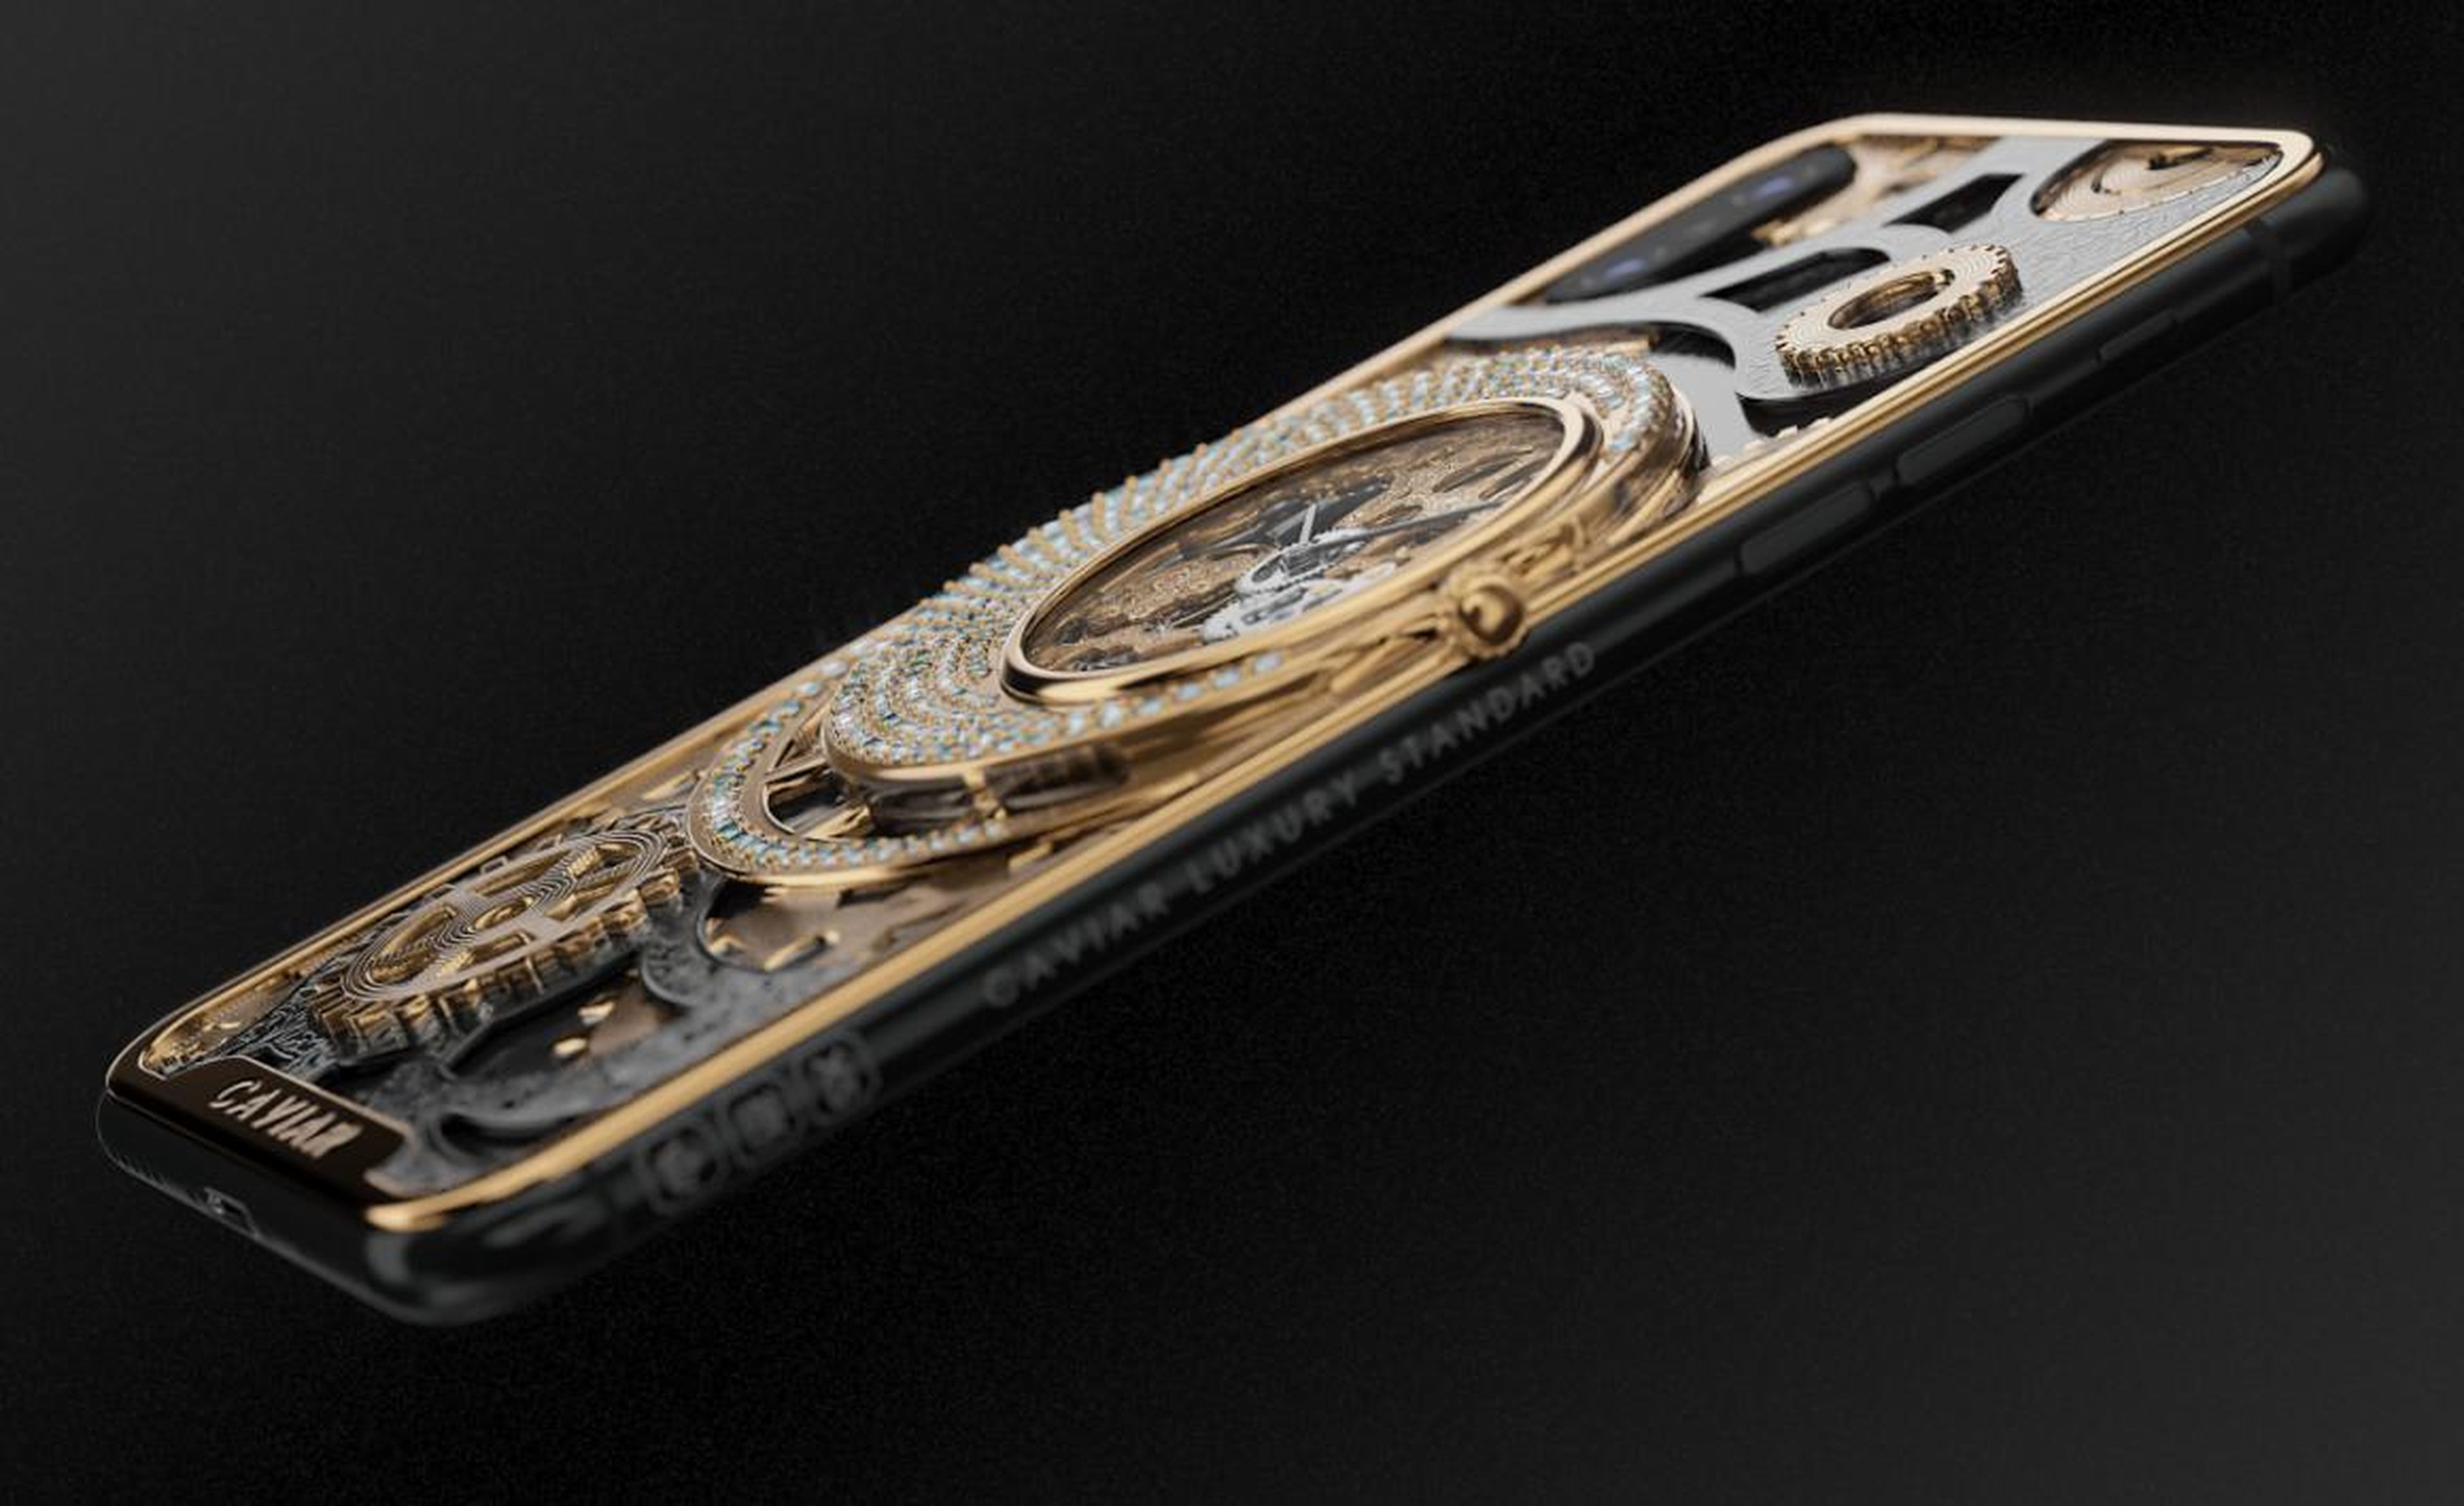 Al margen del diseño y el reloj, el iPhone XS de Caviar es igual que el dispositivo original